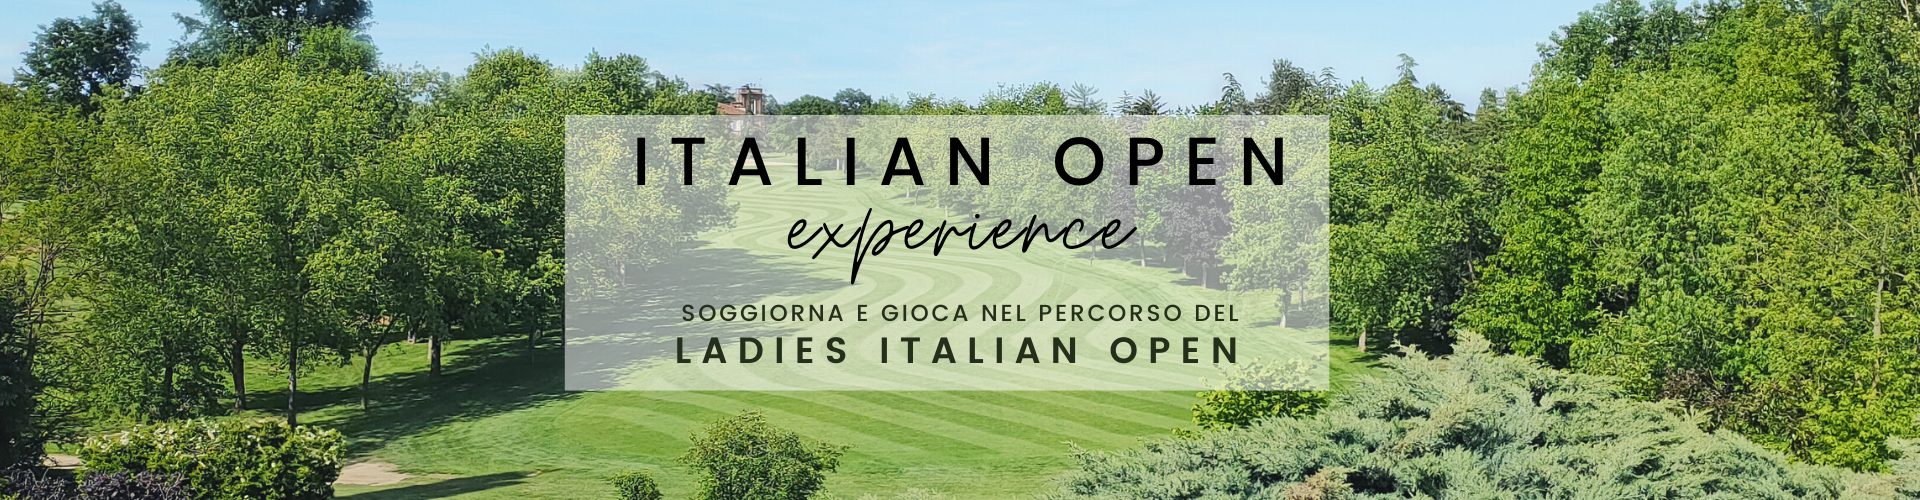 Italian Open experience